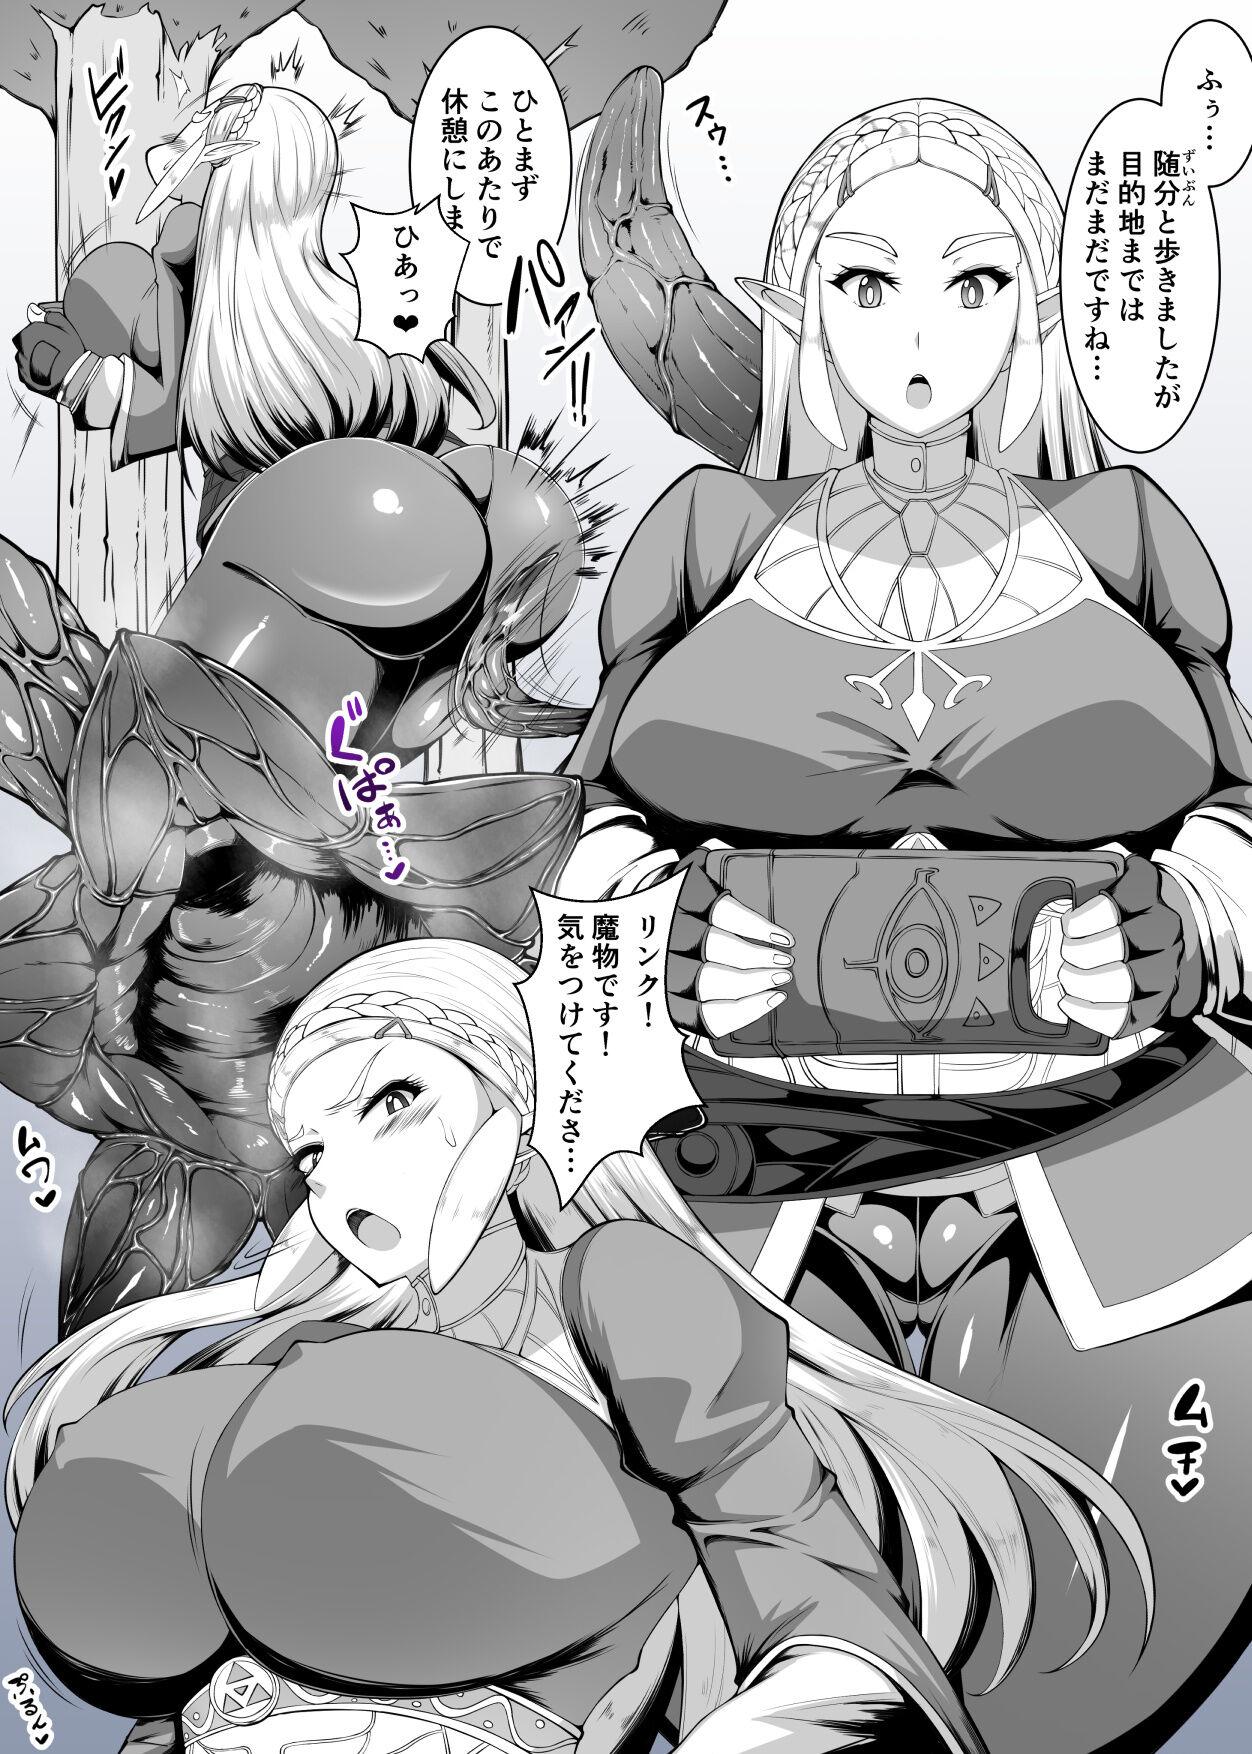 8teen 姫の触手ケツアクメ - The legend of zelda Huge - Page 2